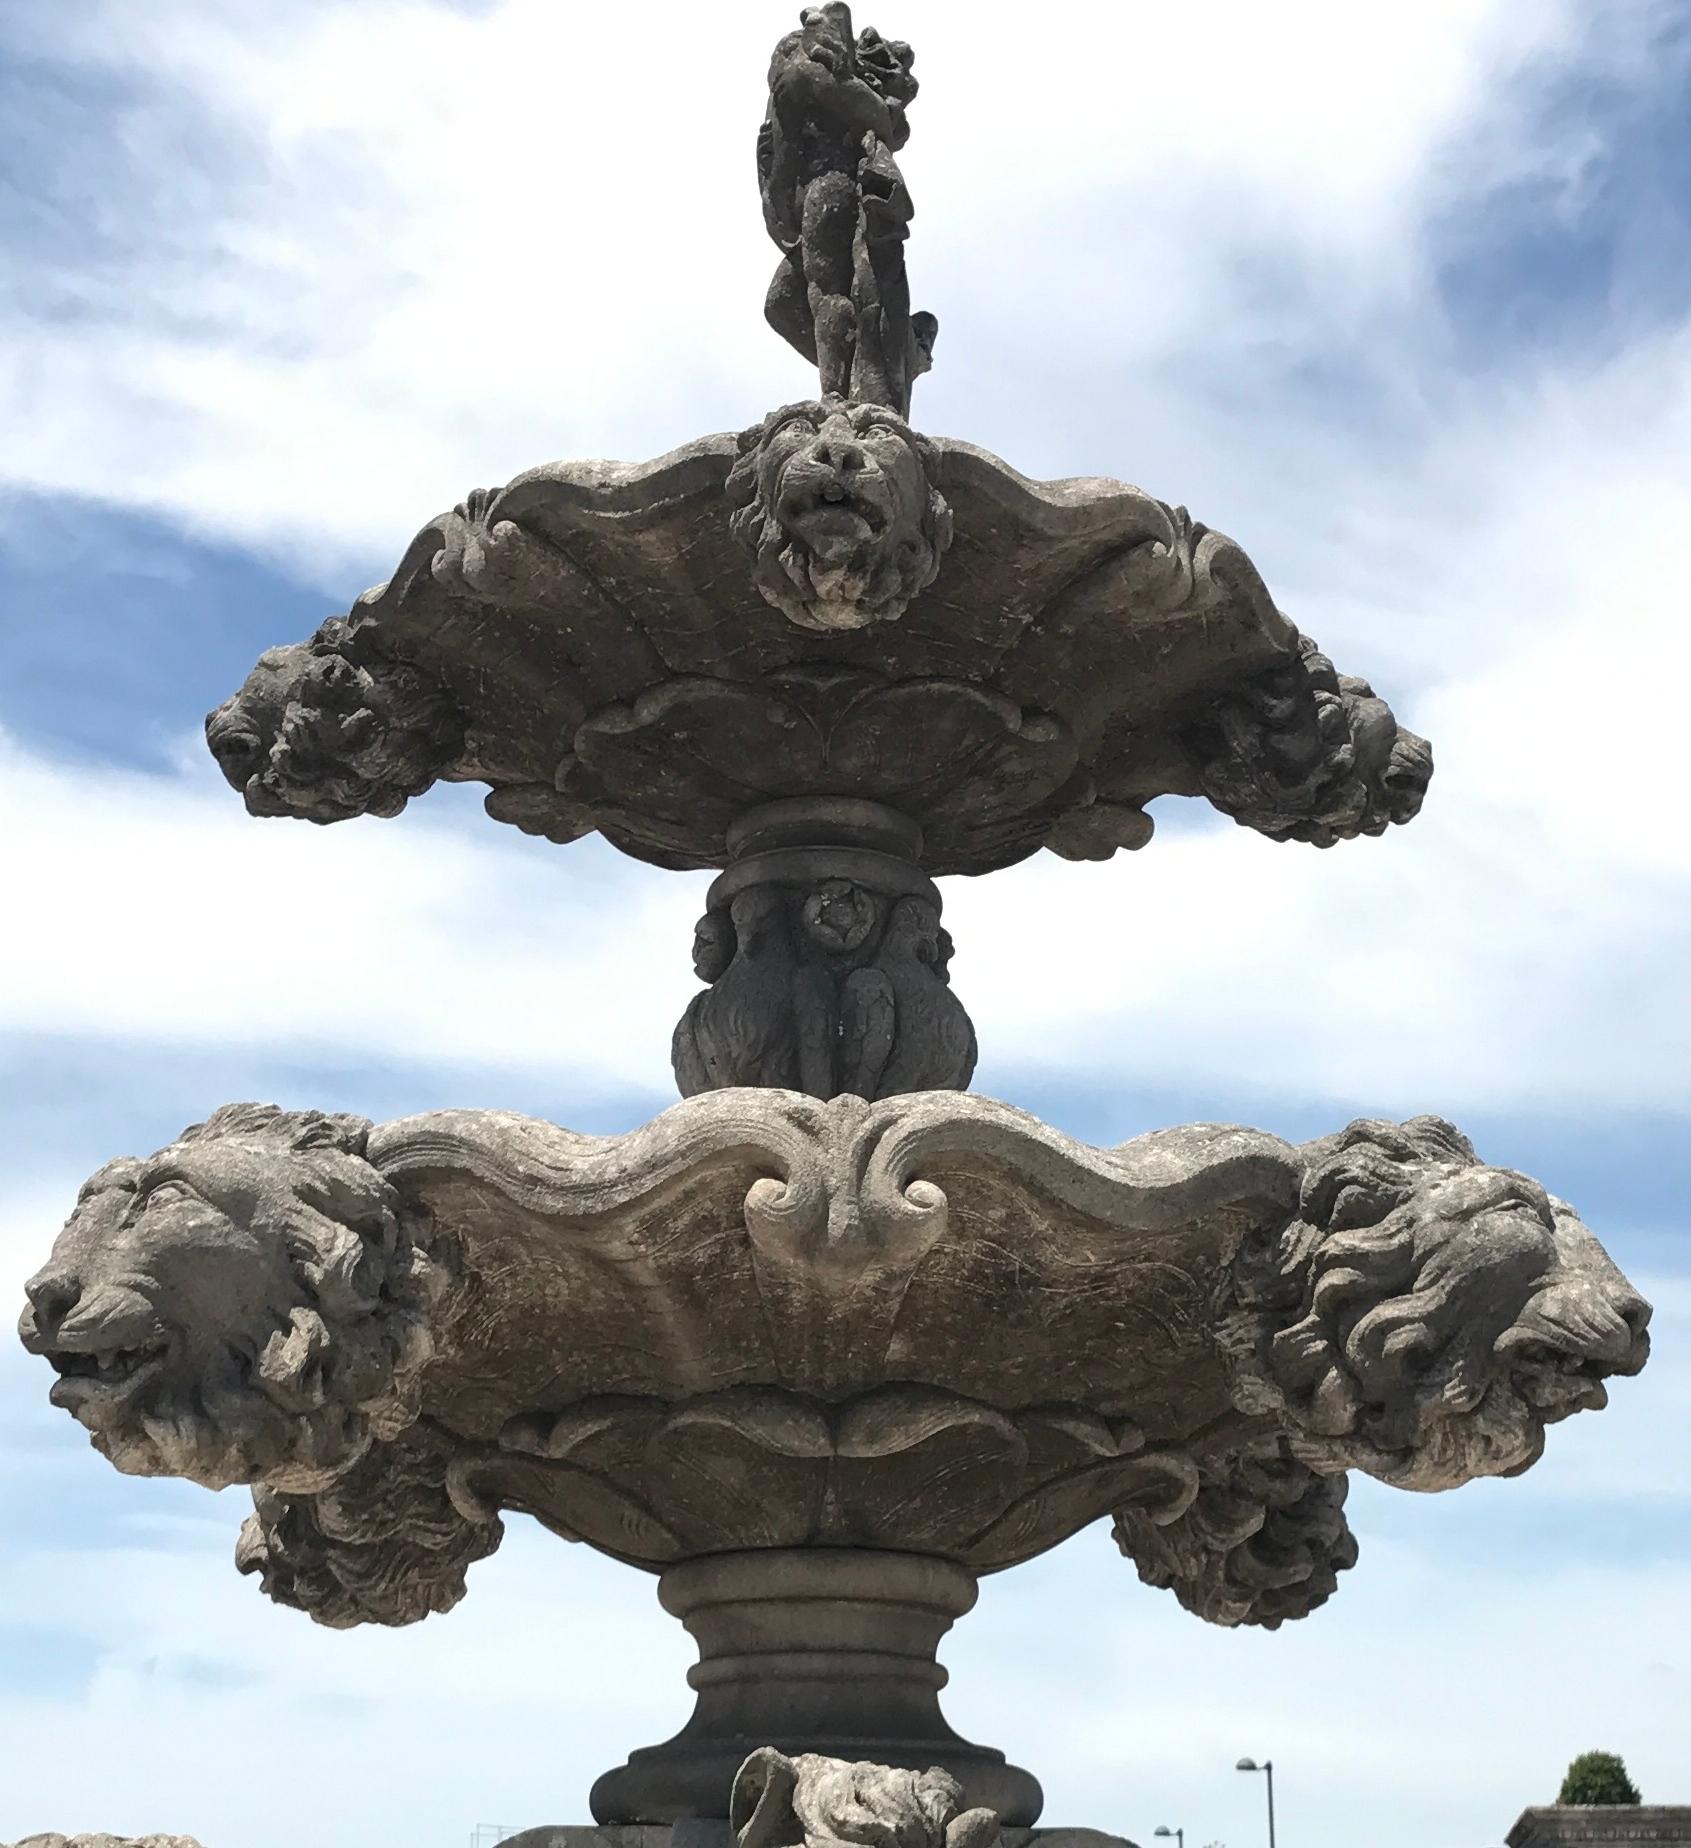 Cette fontaine monumentale en pierre calcaire finement sculptée est composée de trois niveaux.
Le premier étage comportait trois étonnantes statues de chevaux, les autres étaient ornés de têtes de lion et se terminaient par une figure de putto.